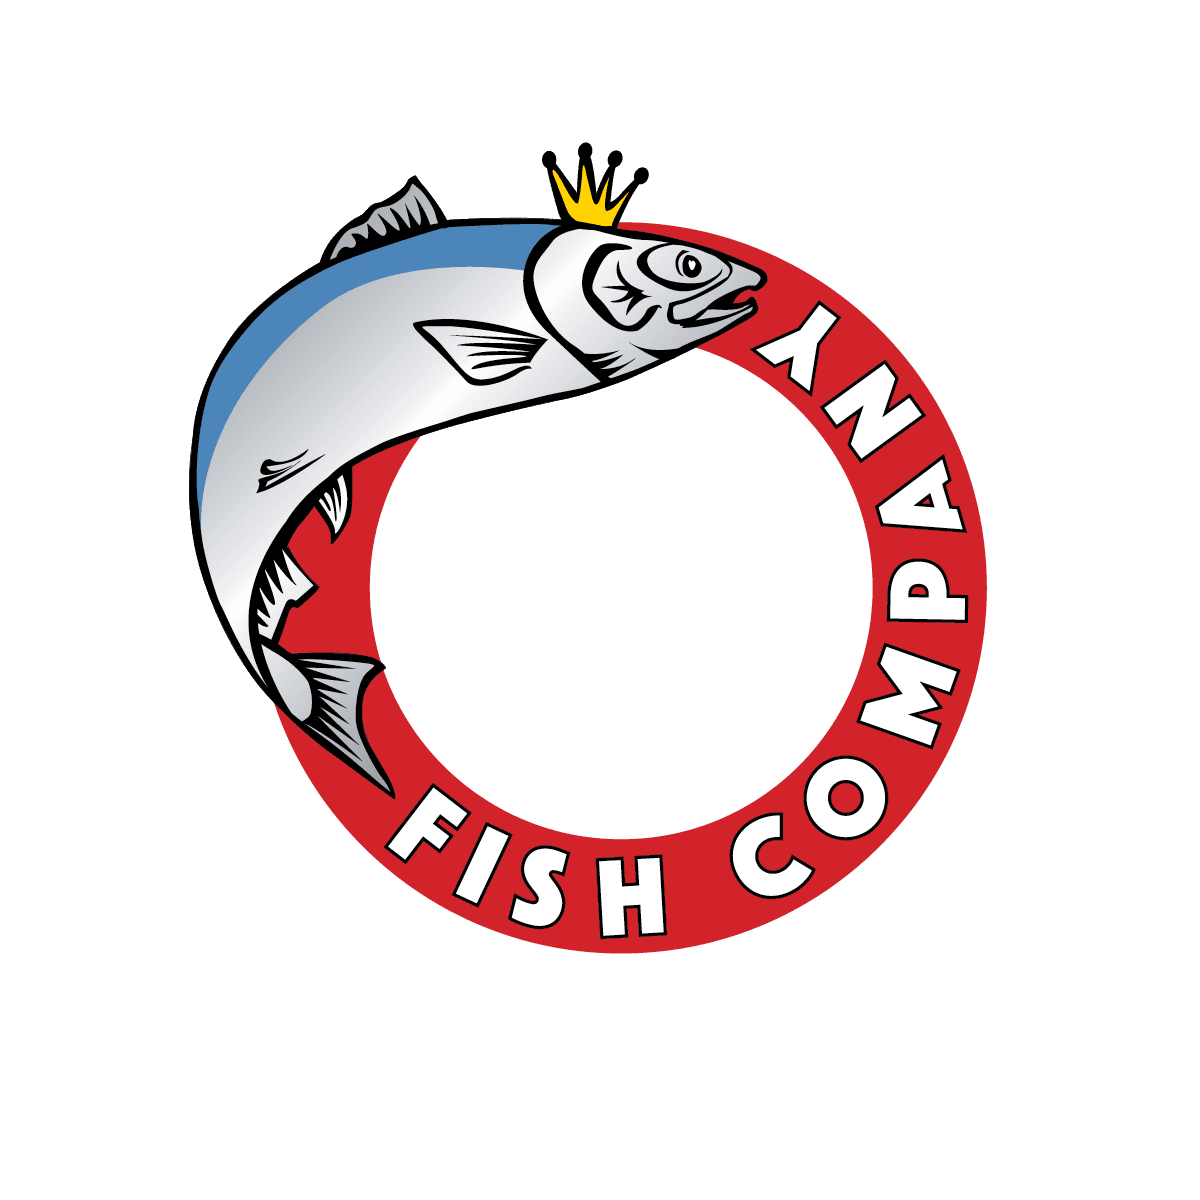 CH Fish Company